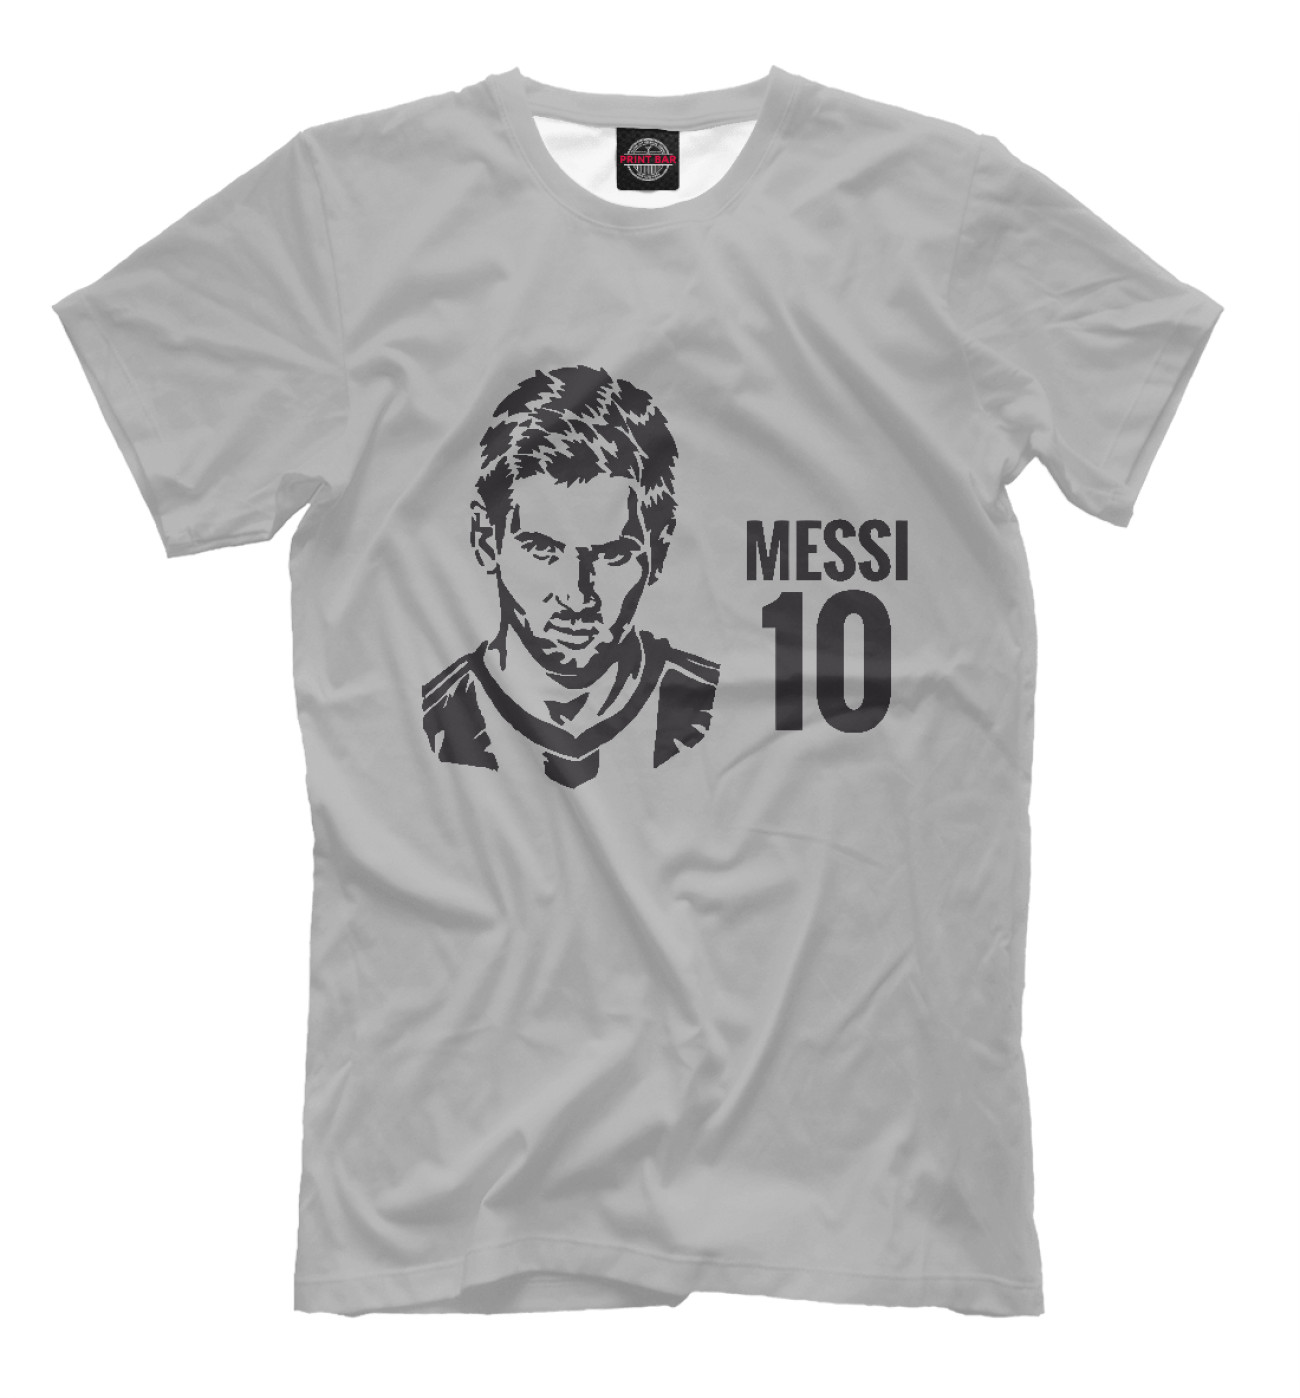 Мужская Футболка Messi 10, артикул: BAR-869510-fut-2